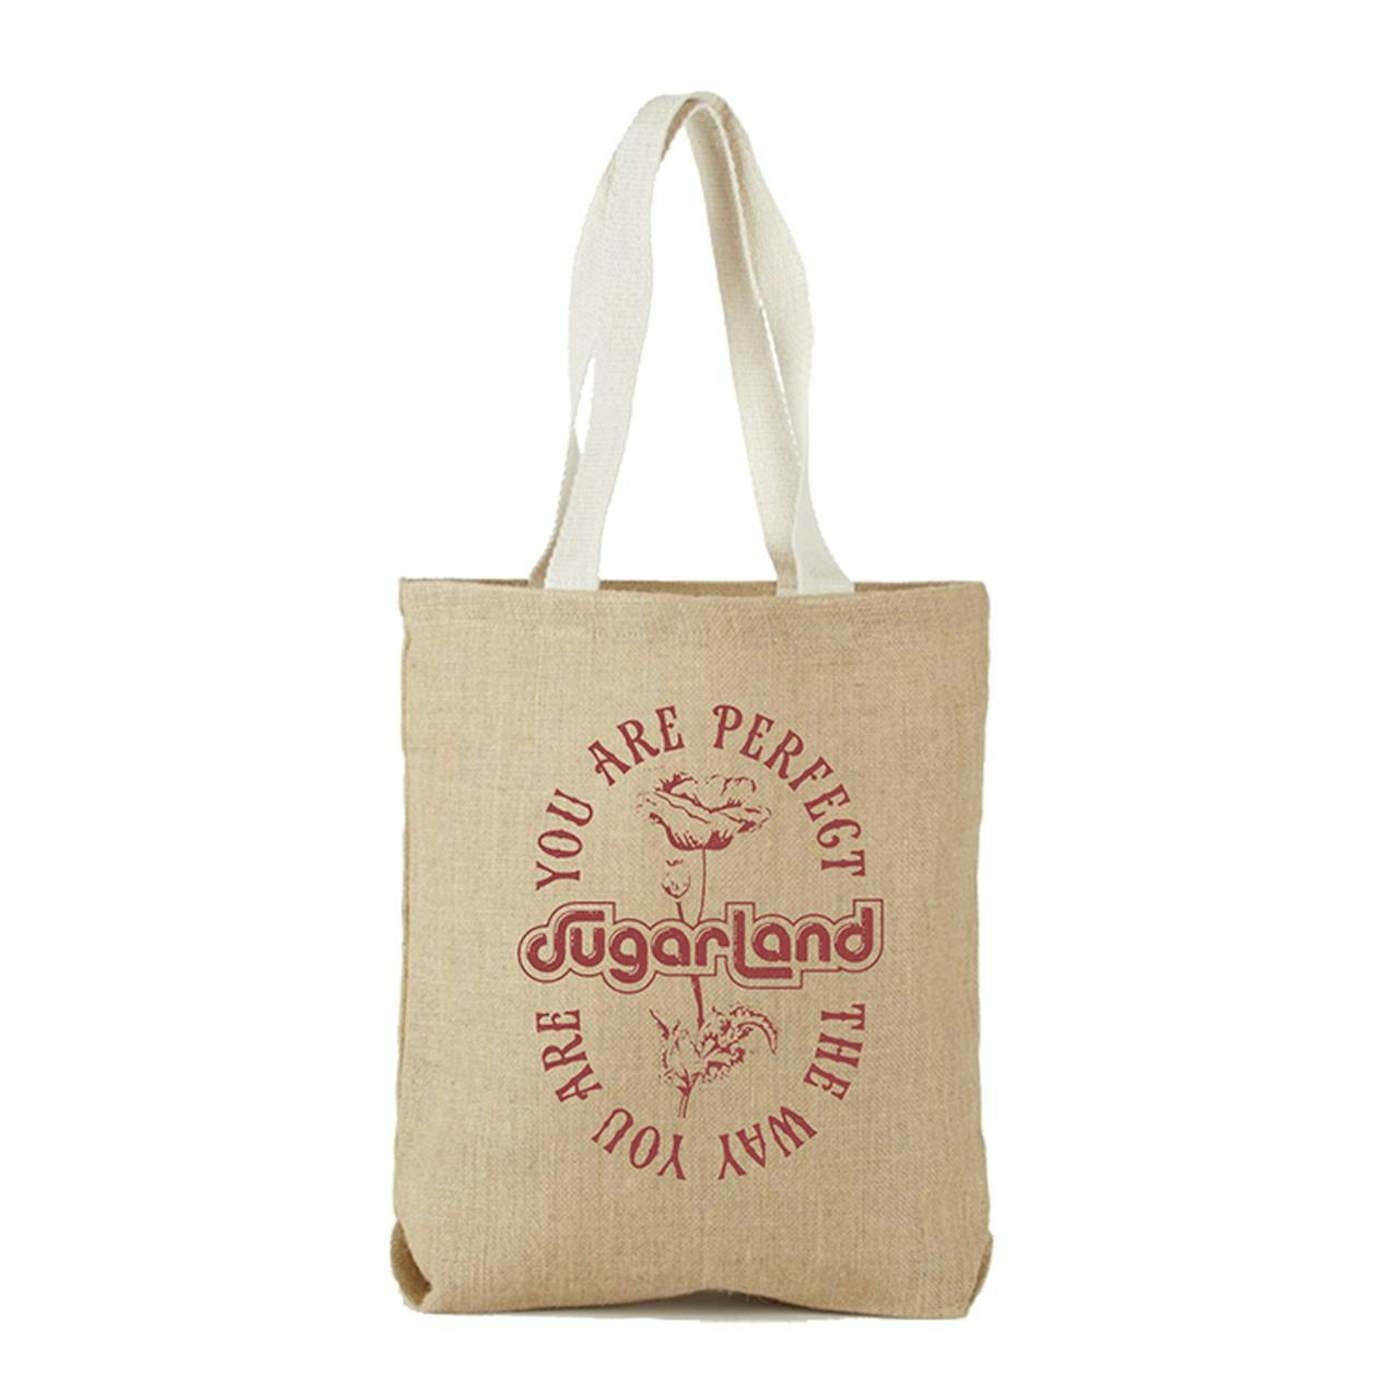 Sugarland Tote Bag